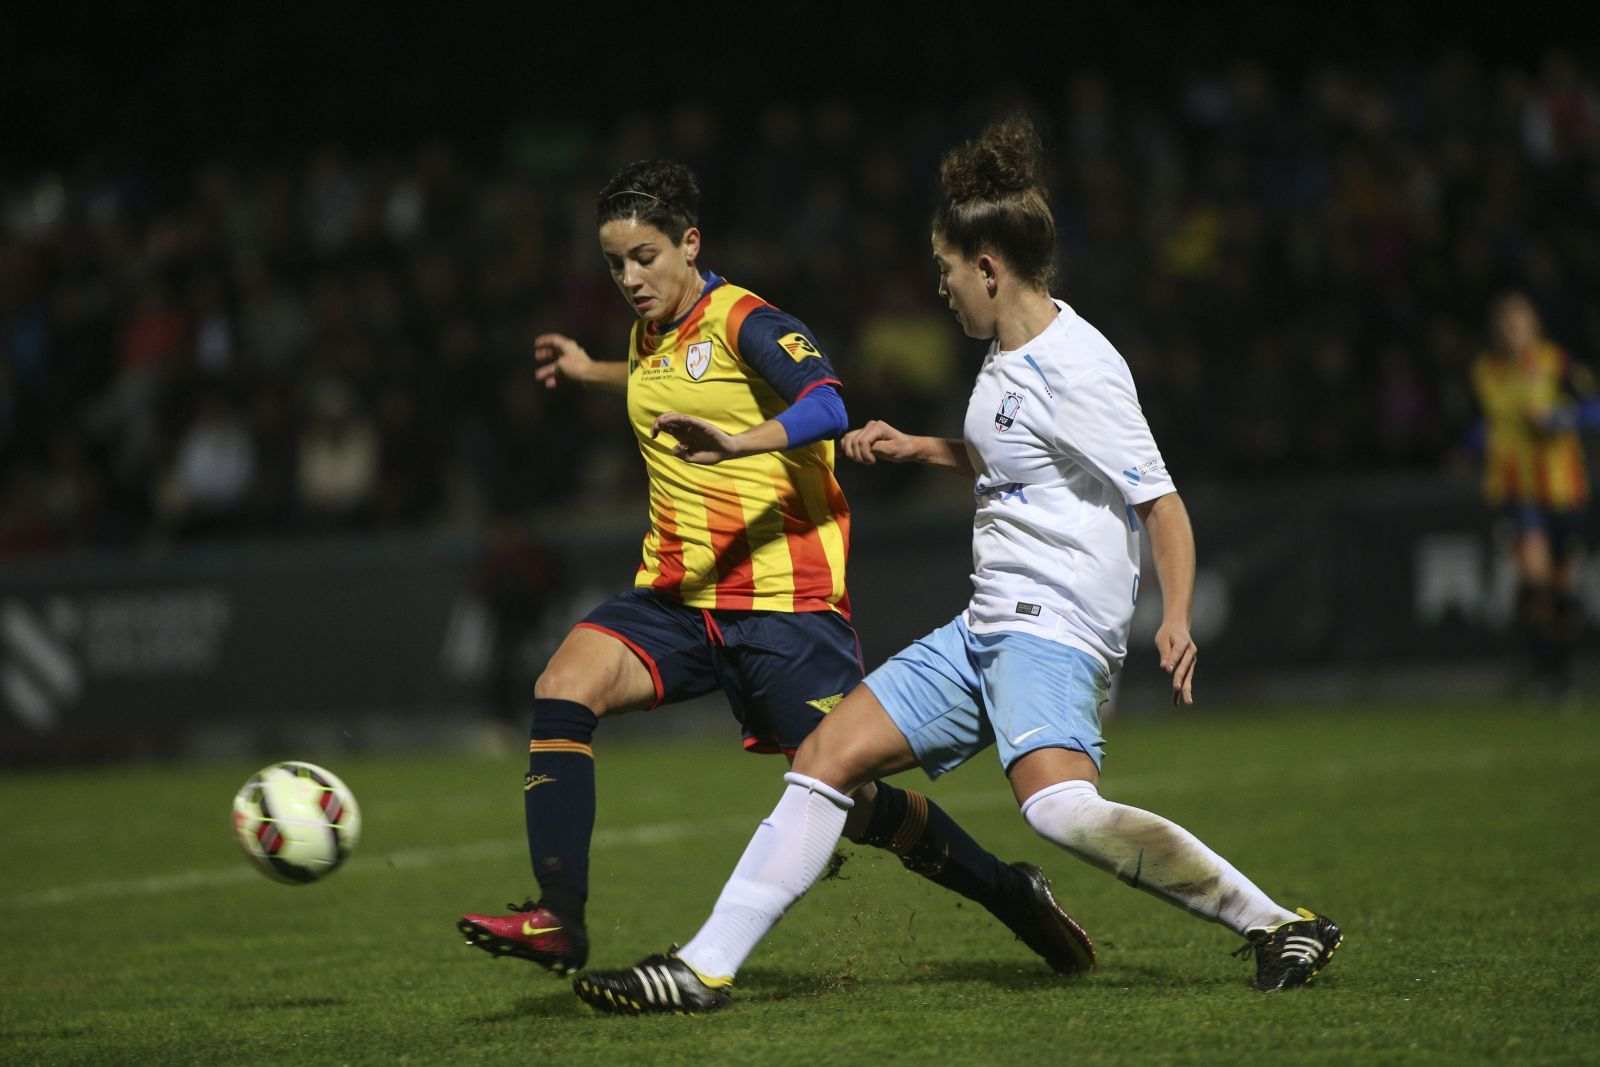 La selecció femenina no té pietat de Galícia (0-5)